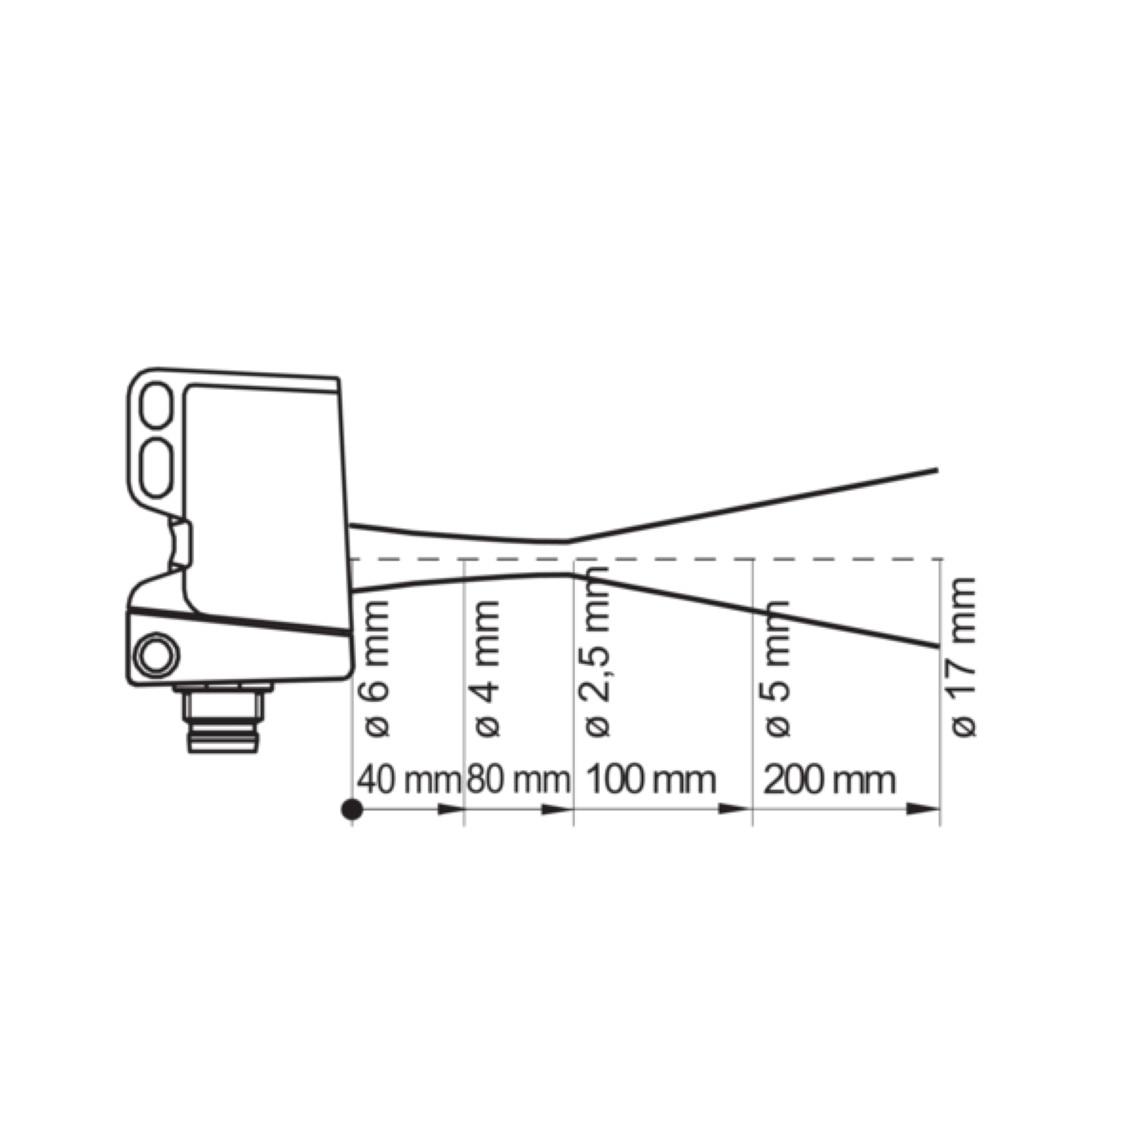 Senzor optic difuz cu suprimarea fundalului, rectangular,  Baumer